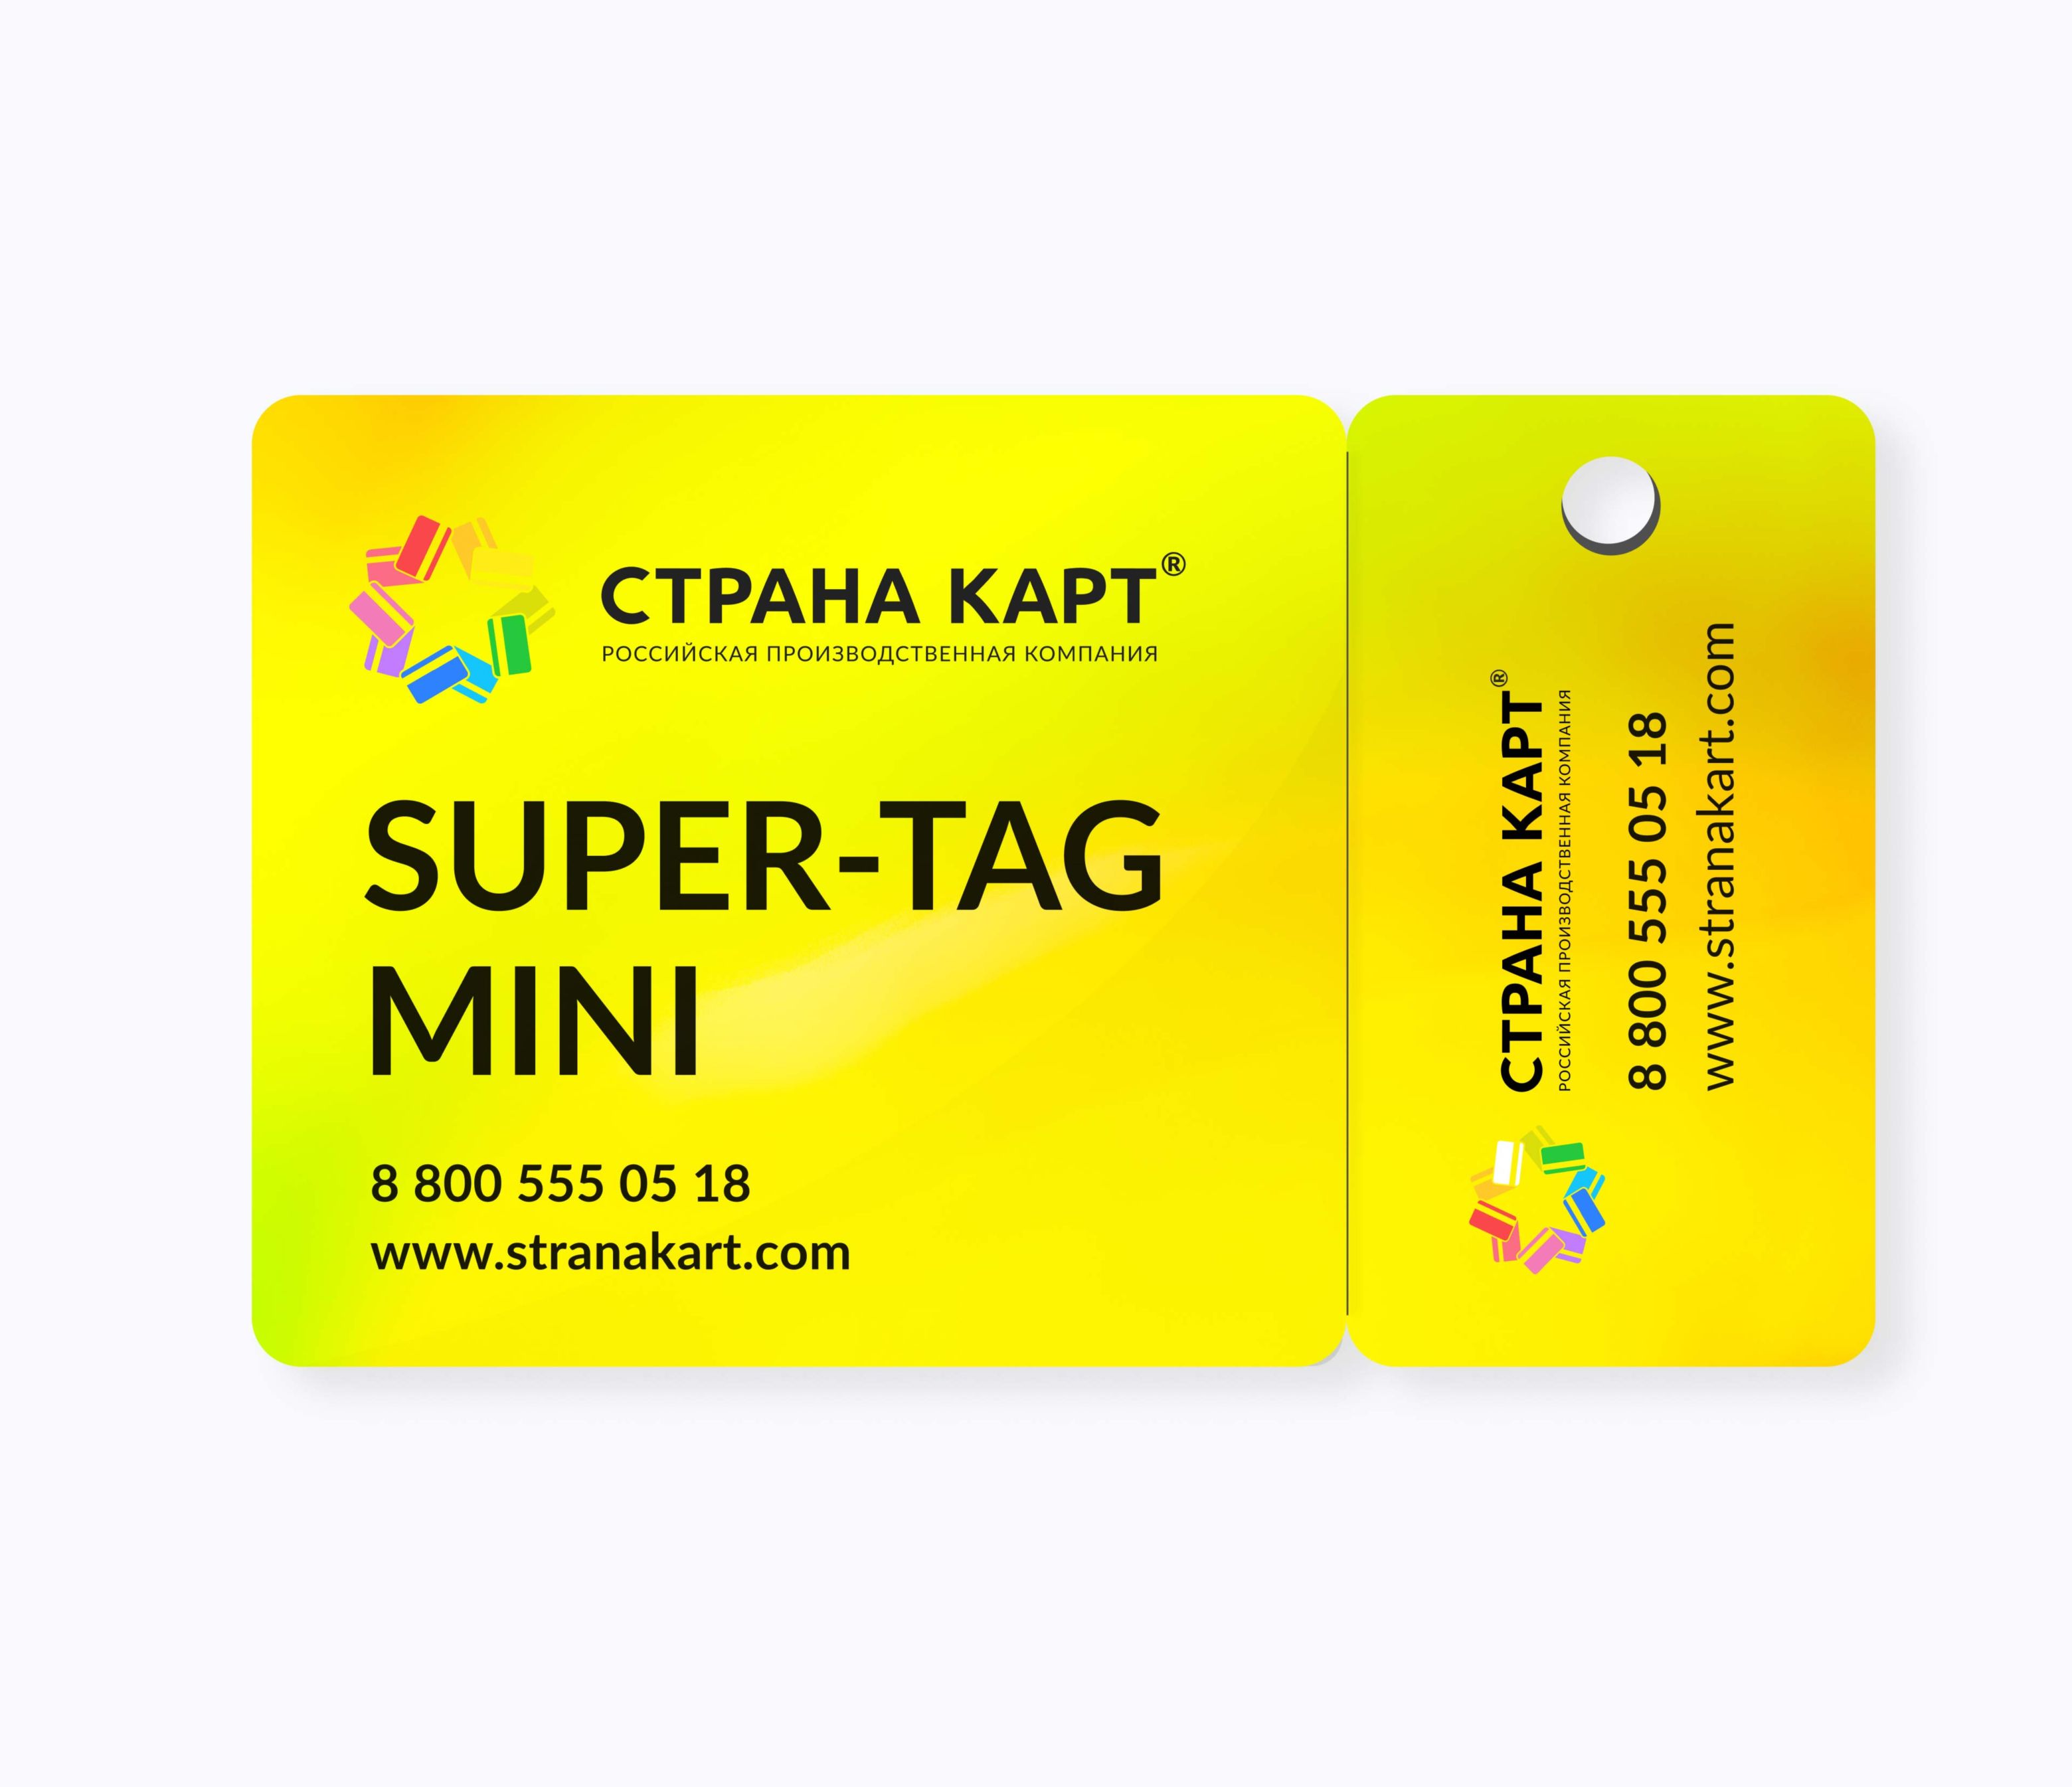 Топливные нестандартные пластиковые карты SUPER-TAG Mini Топливные нестандартные пластиковые карты